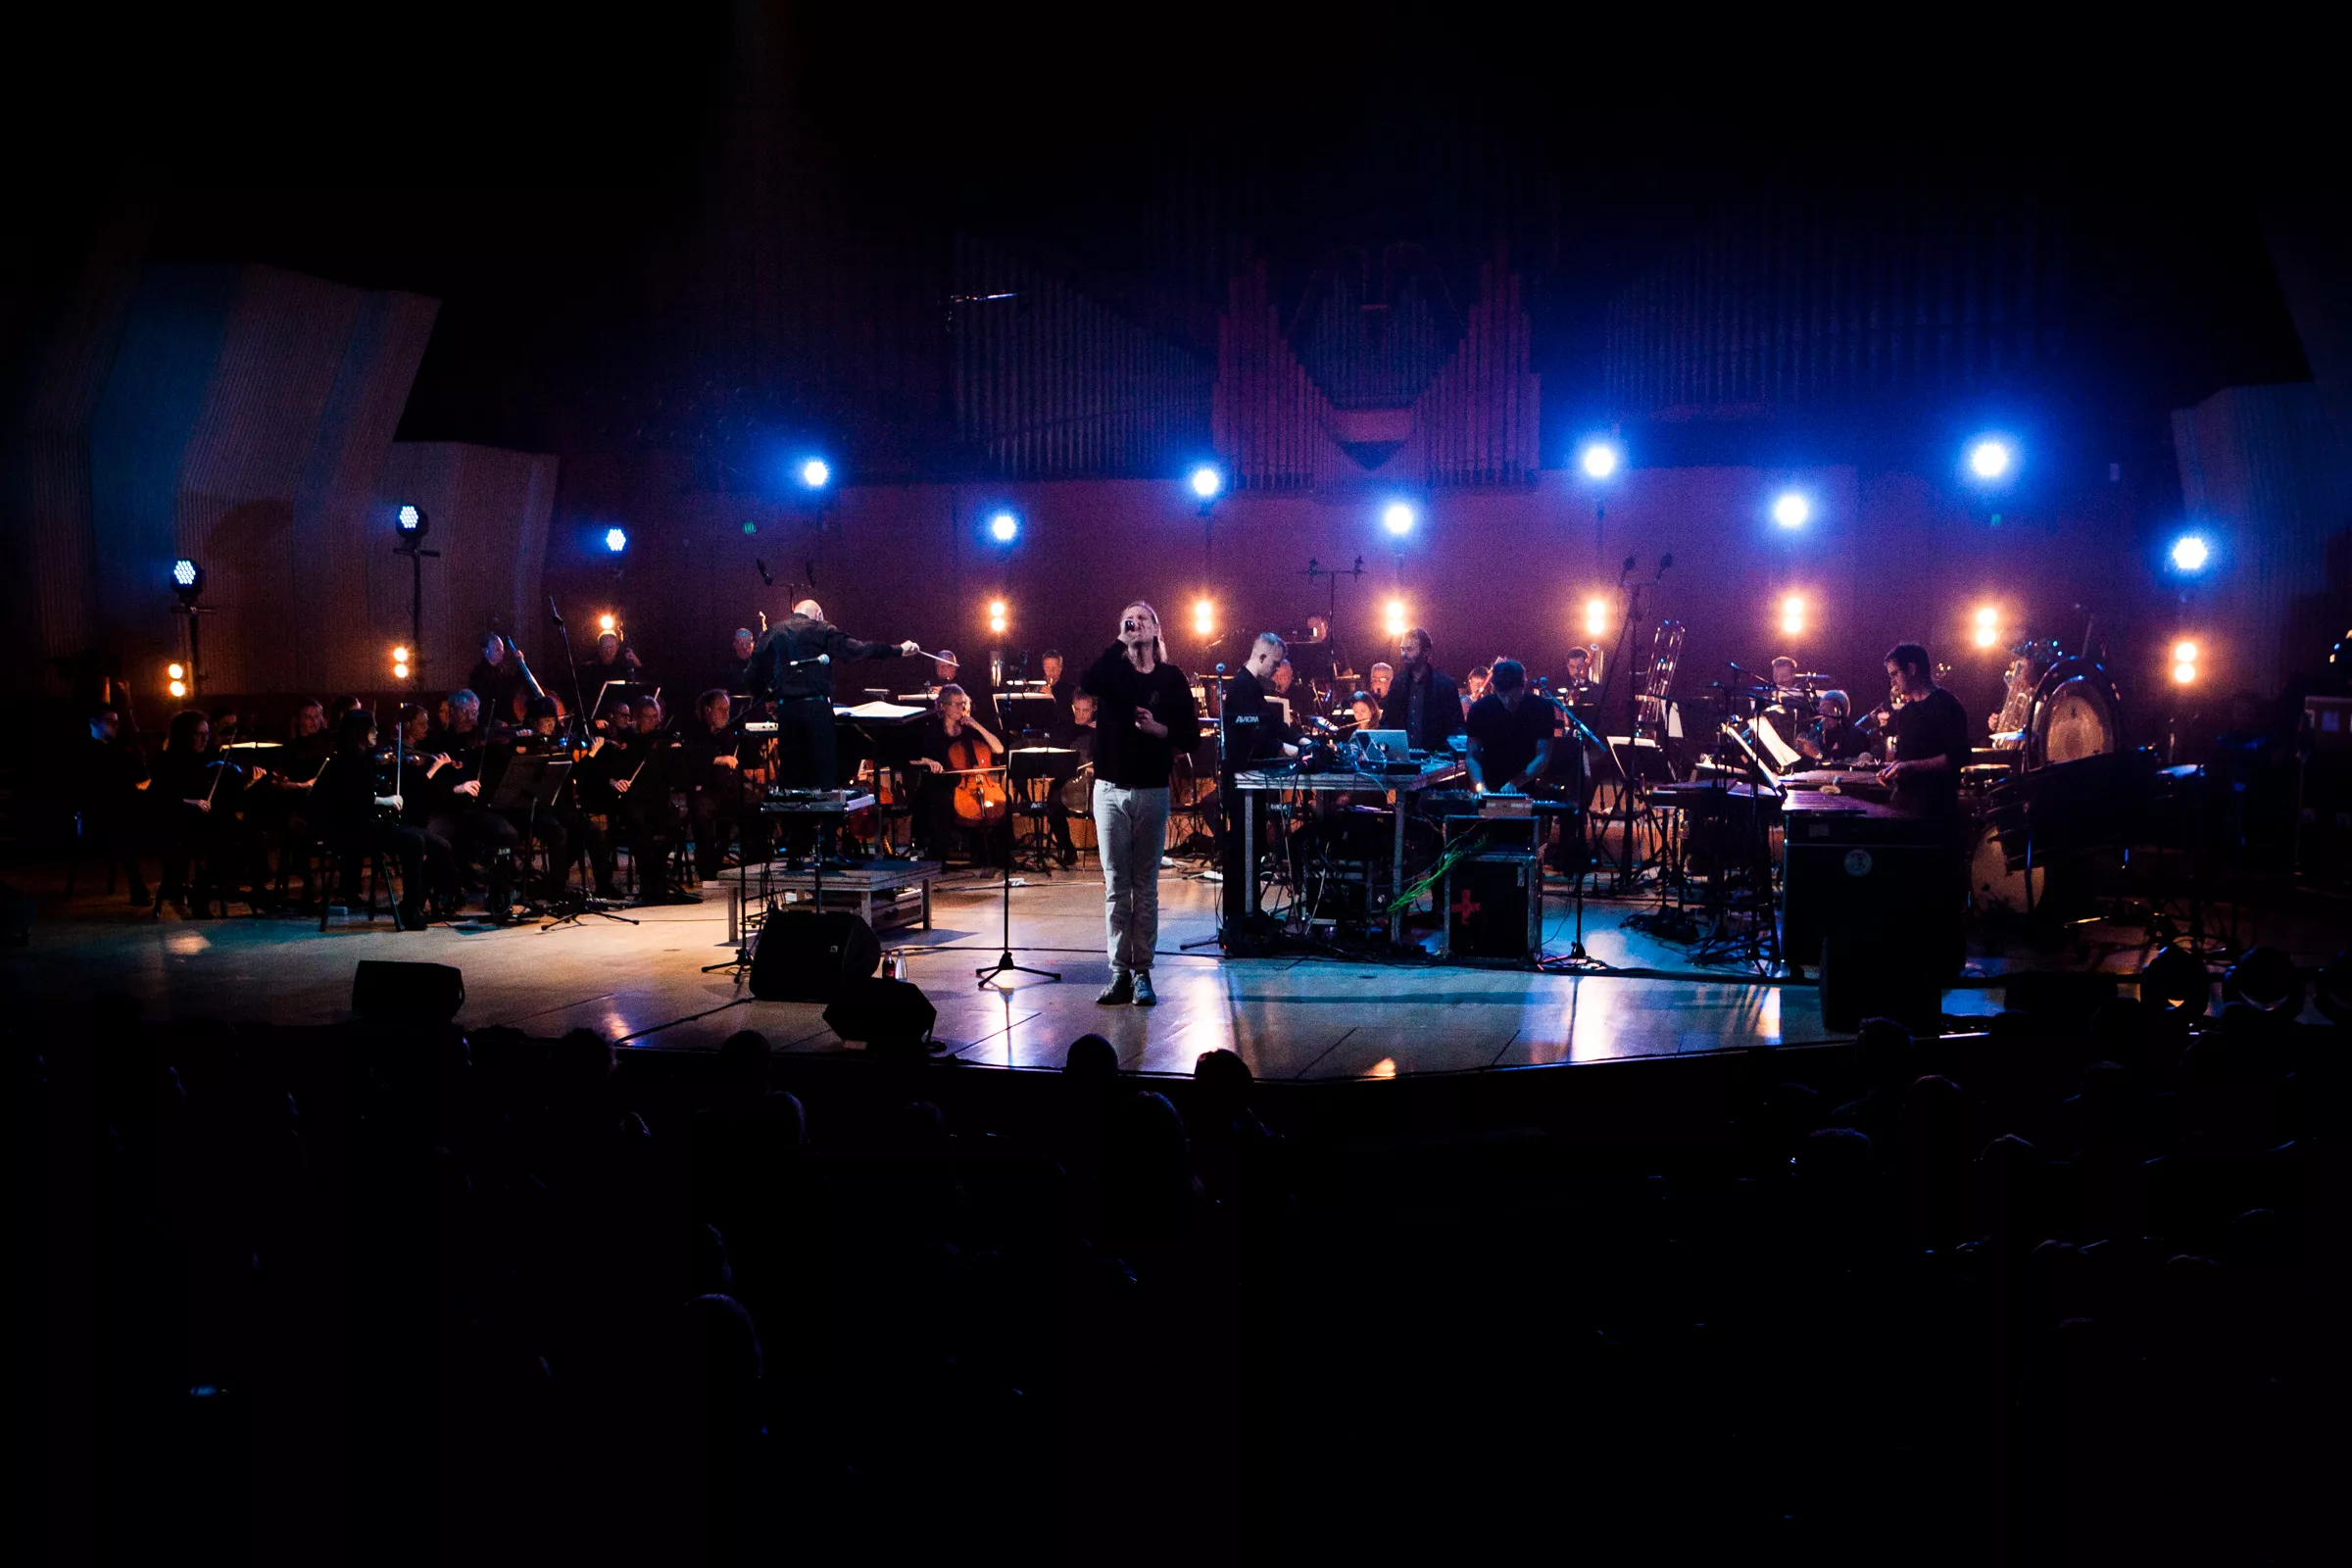 Surprise-koncertfilm på CPH:DOX: When Saints Go Machine i samarbejde med lukningstruede Copenhagen Phil